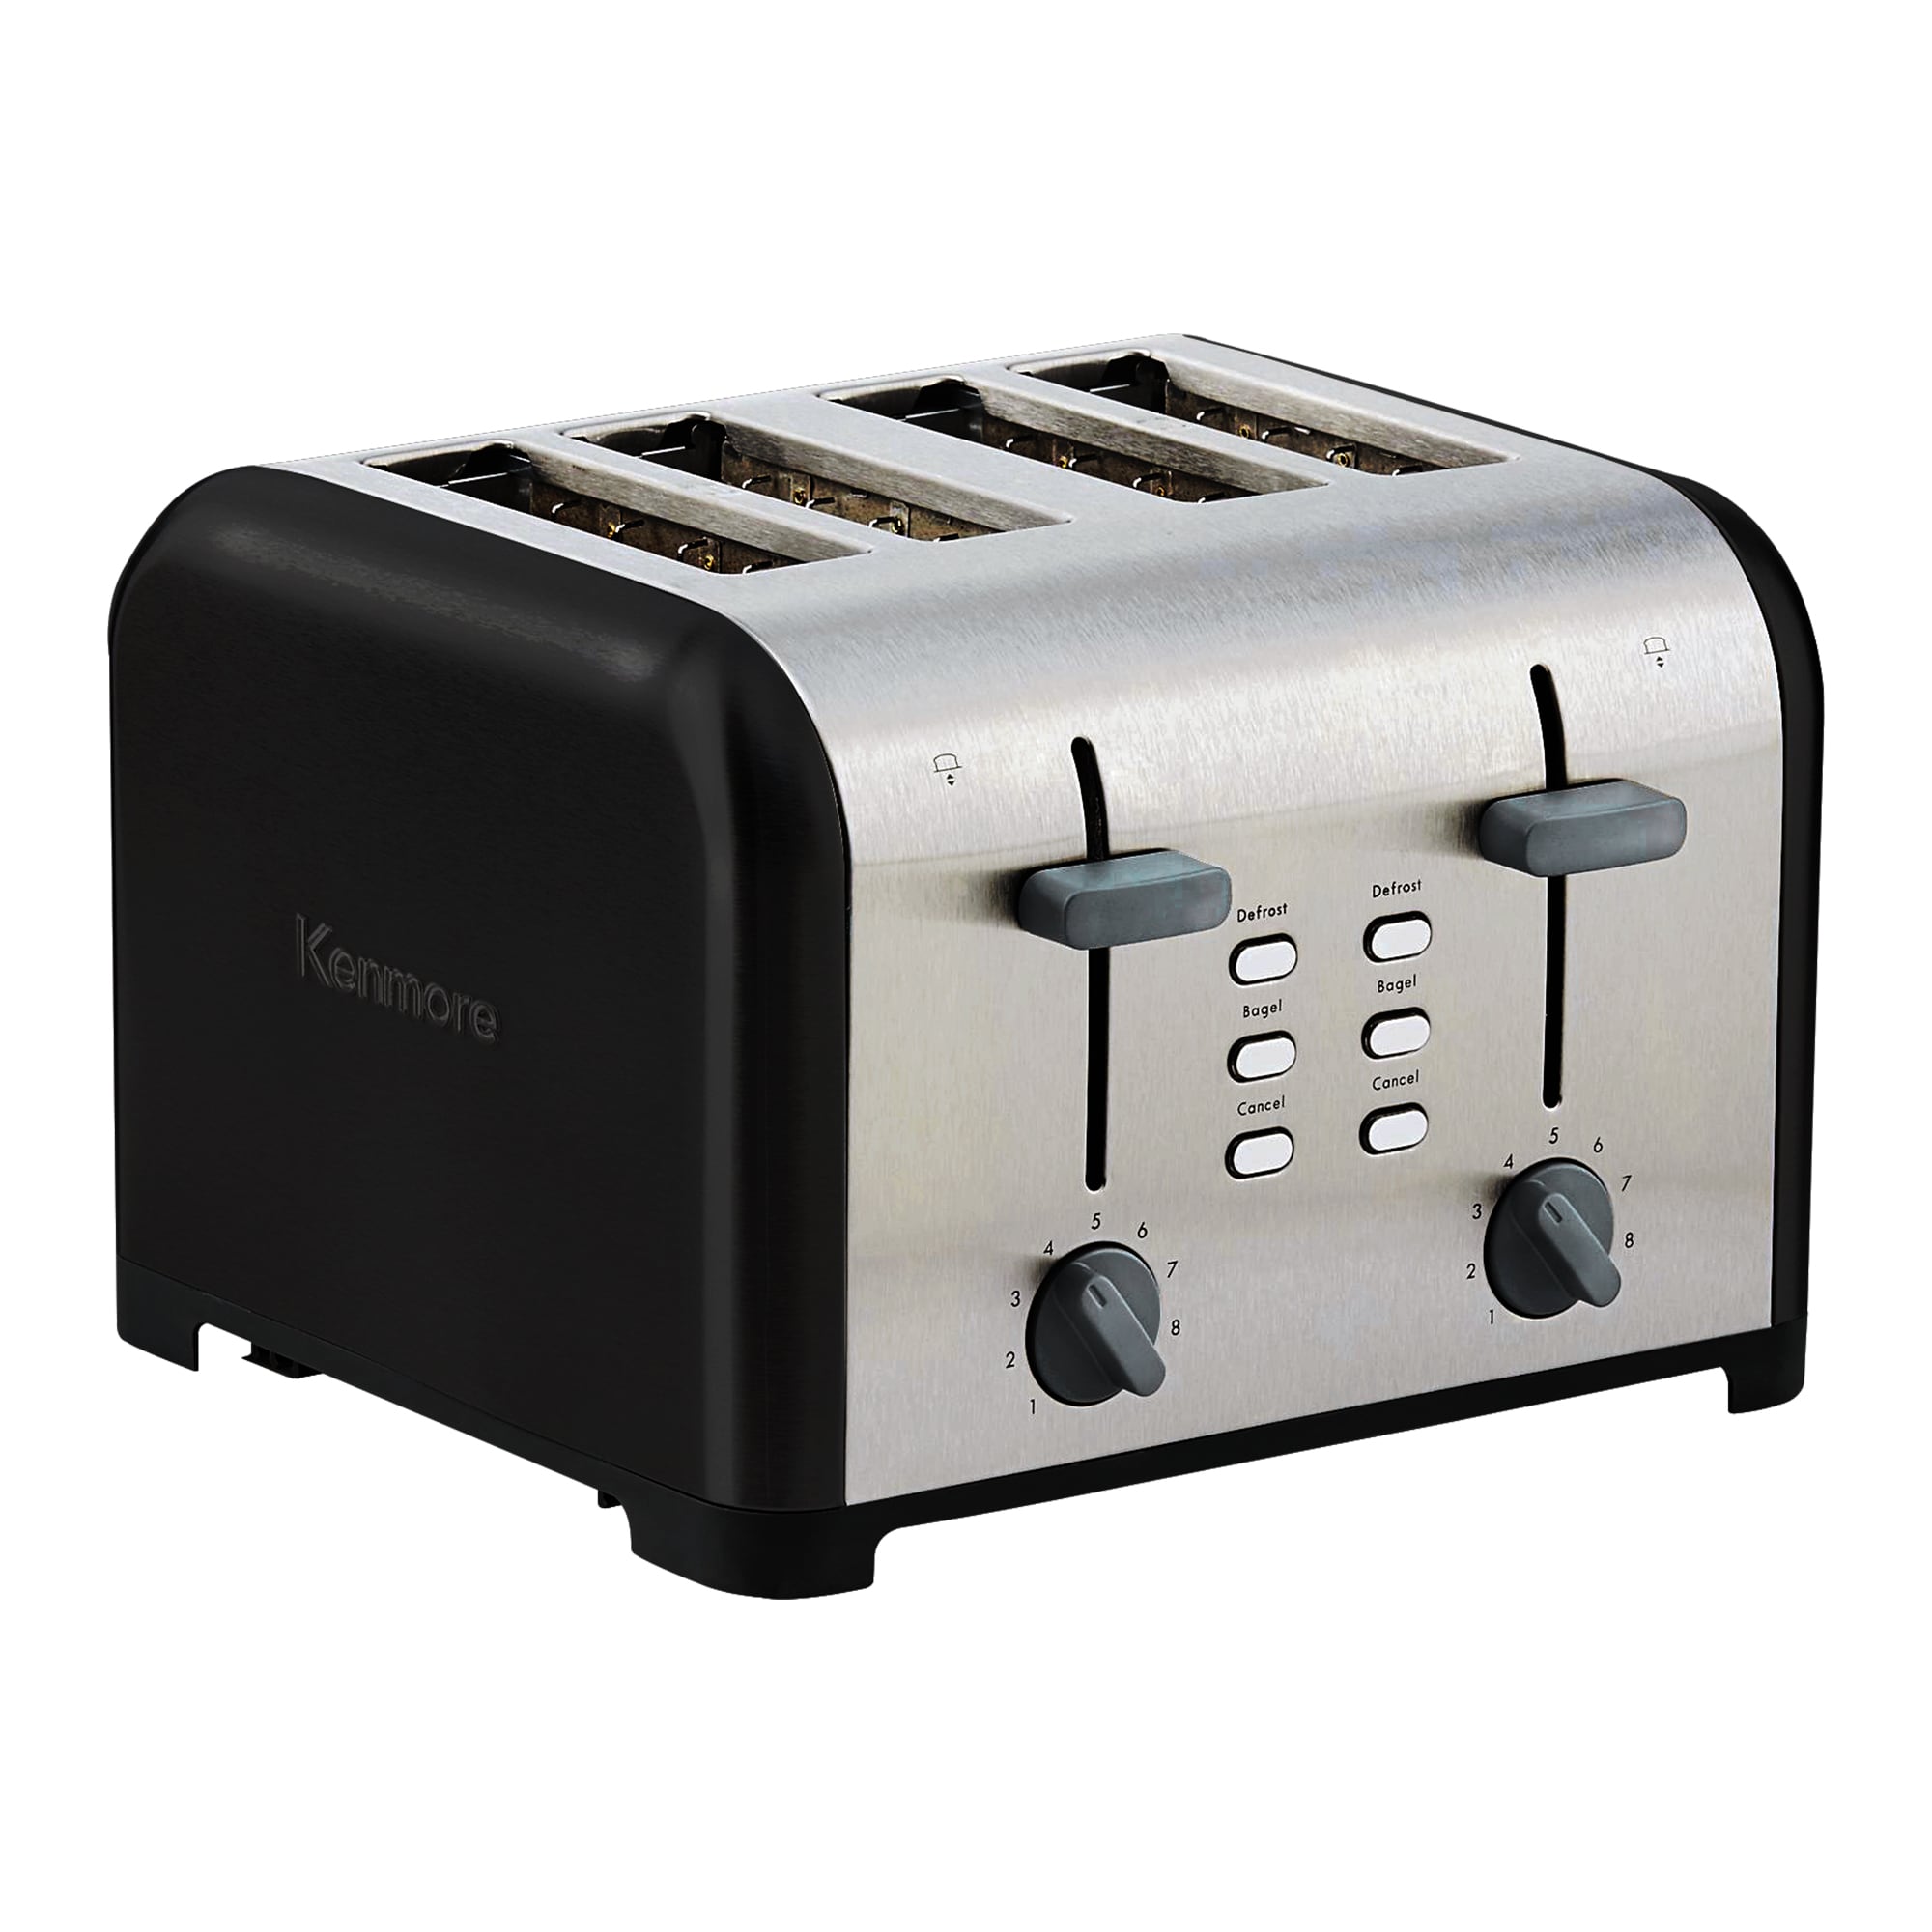 Cuisinart 4-Slice Black 1800-Watt Toaster at